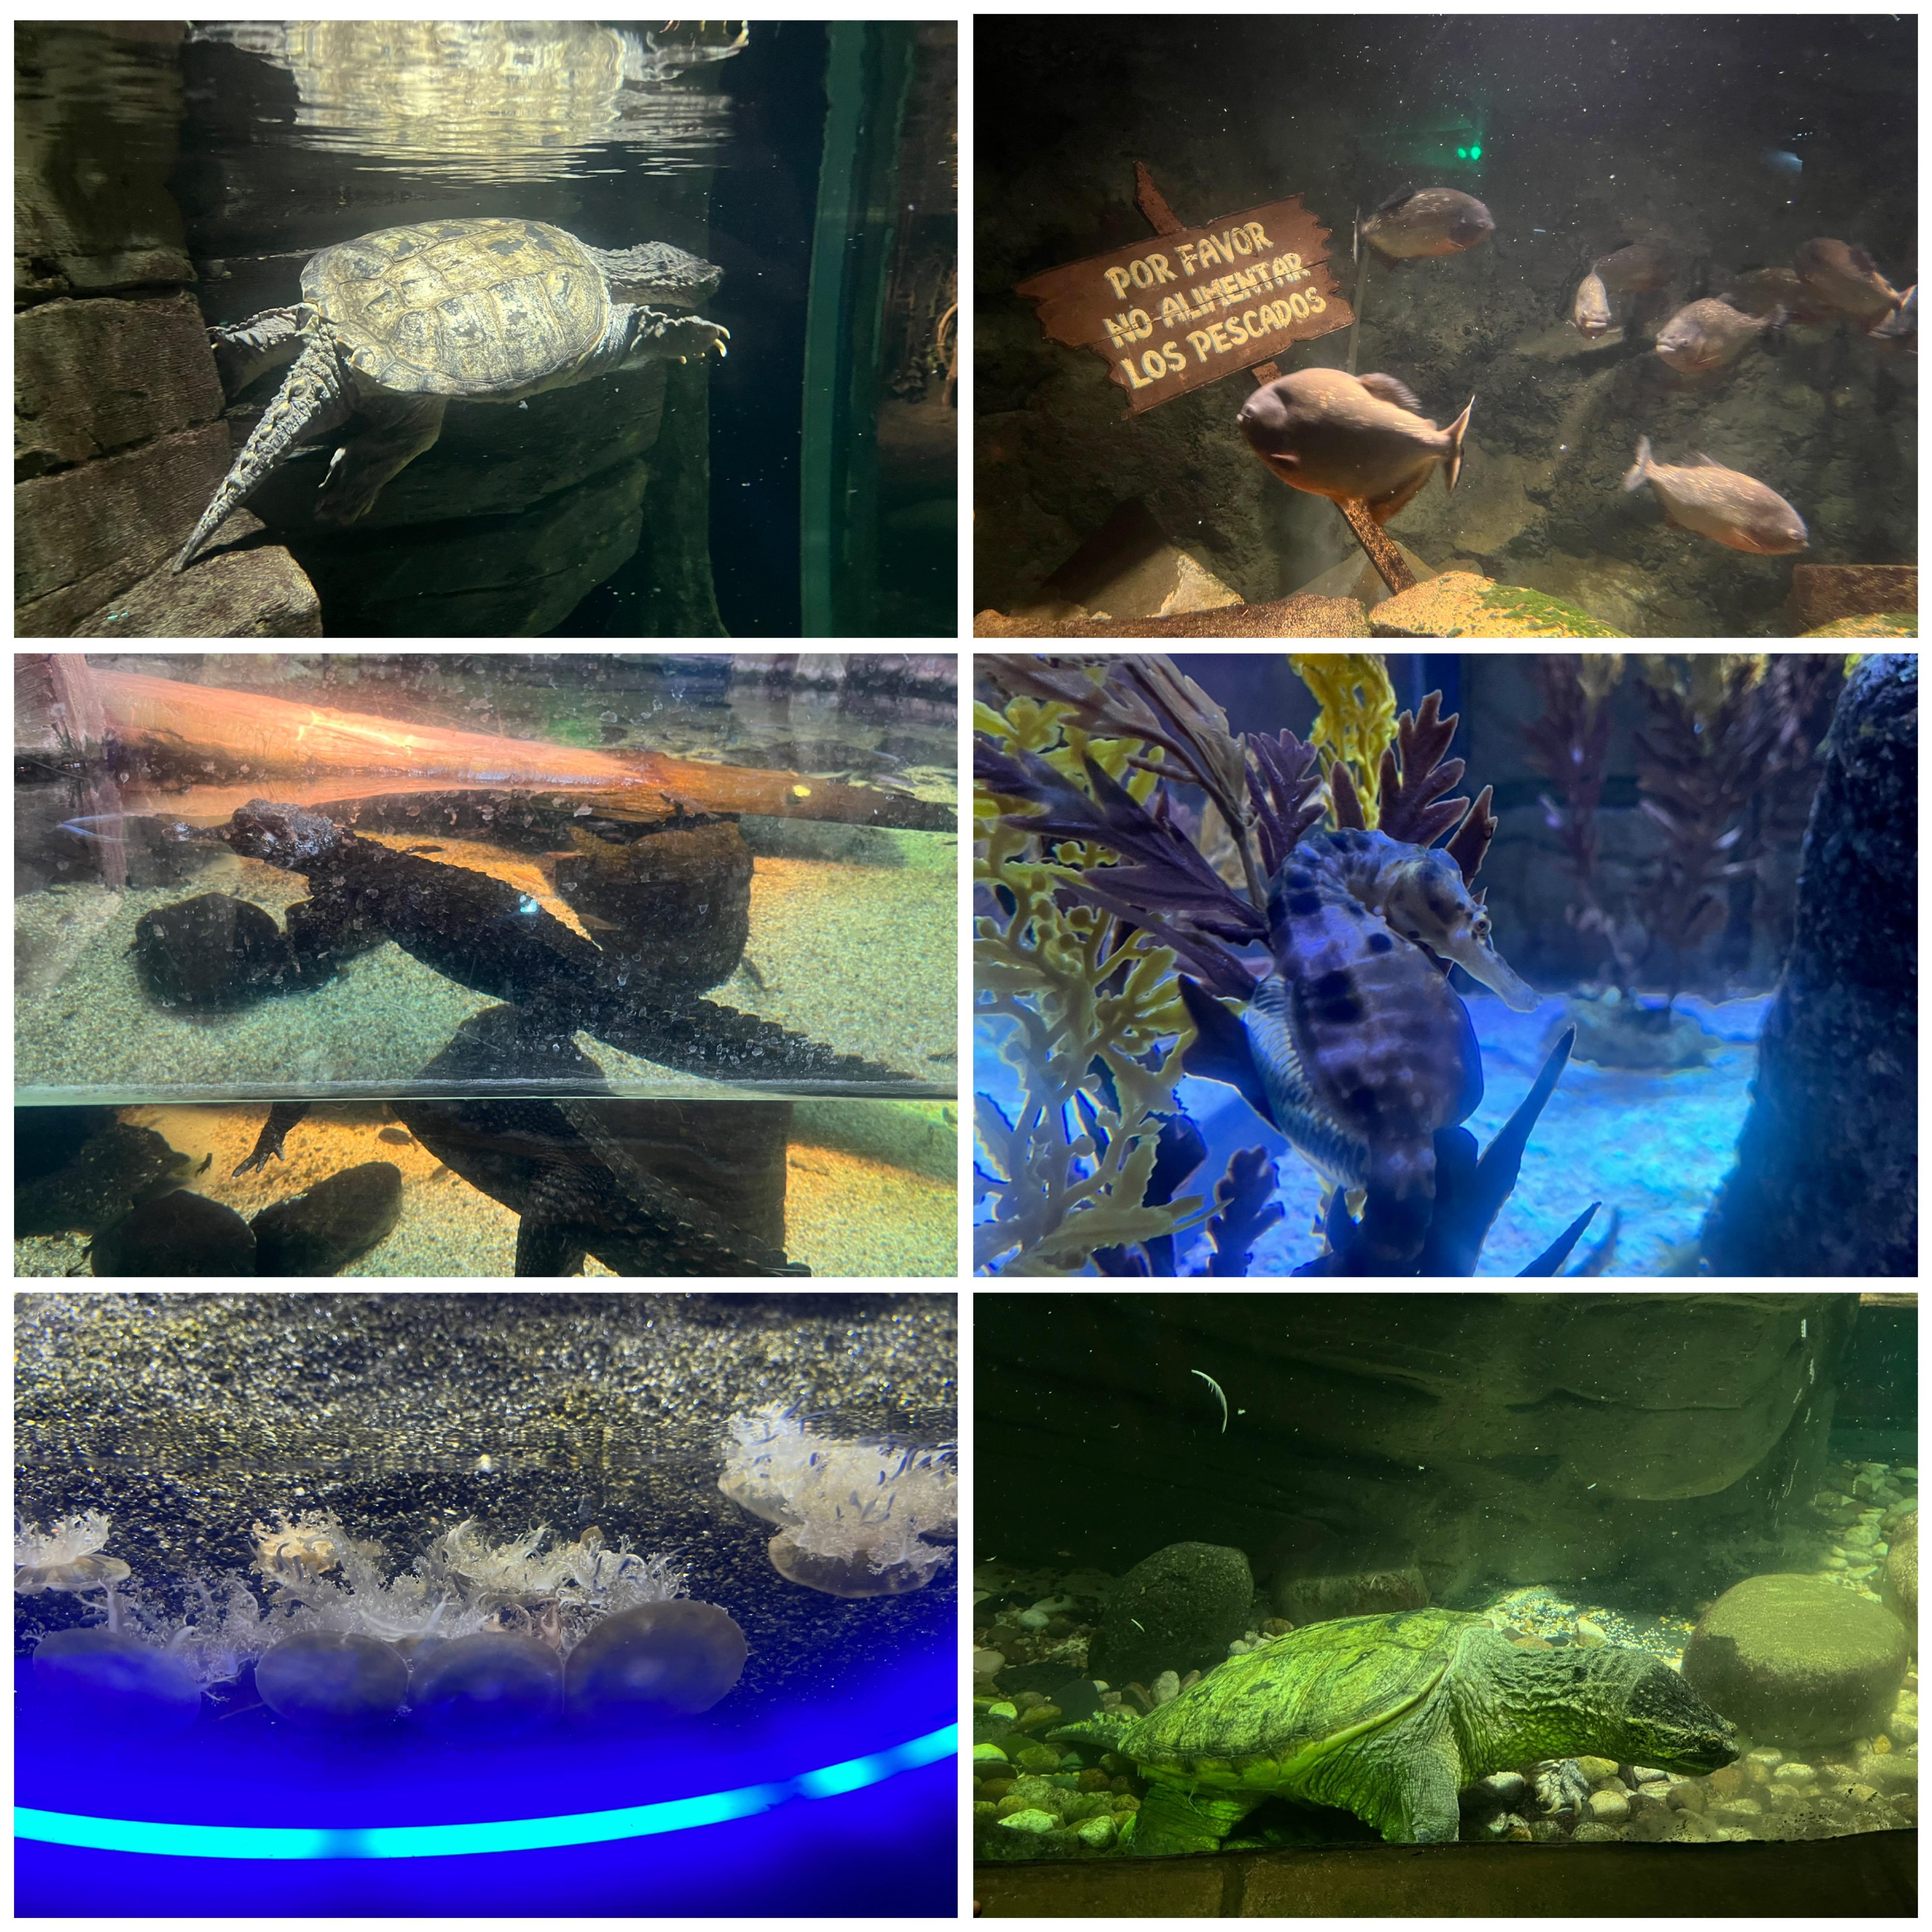 Turtles at the Aquarium